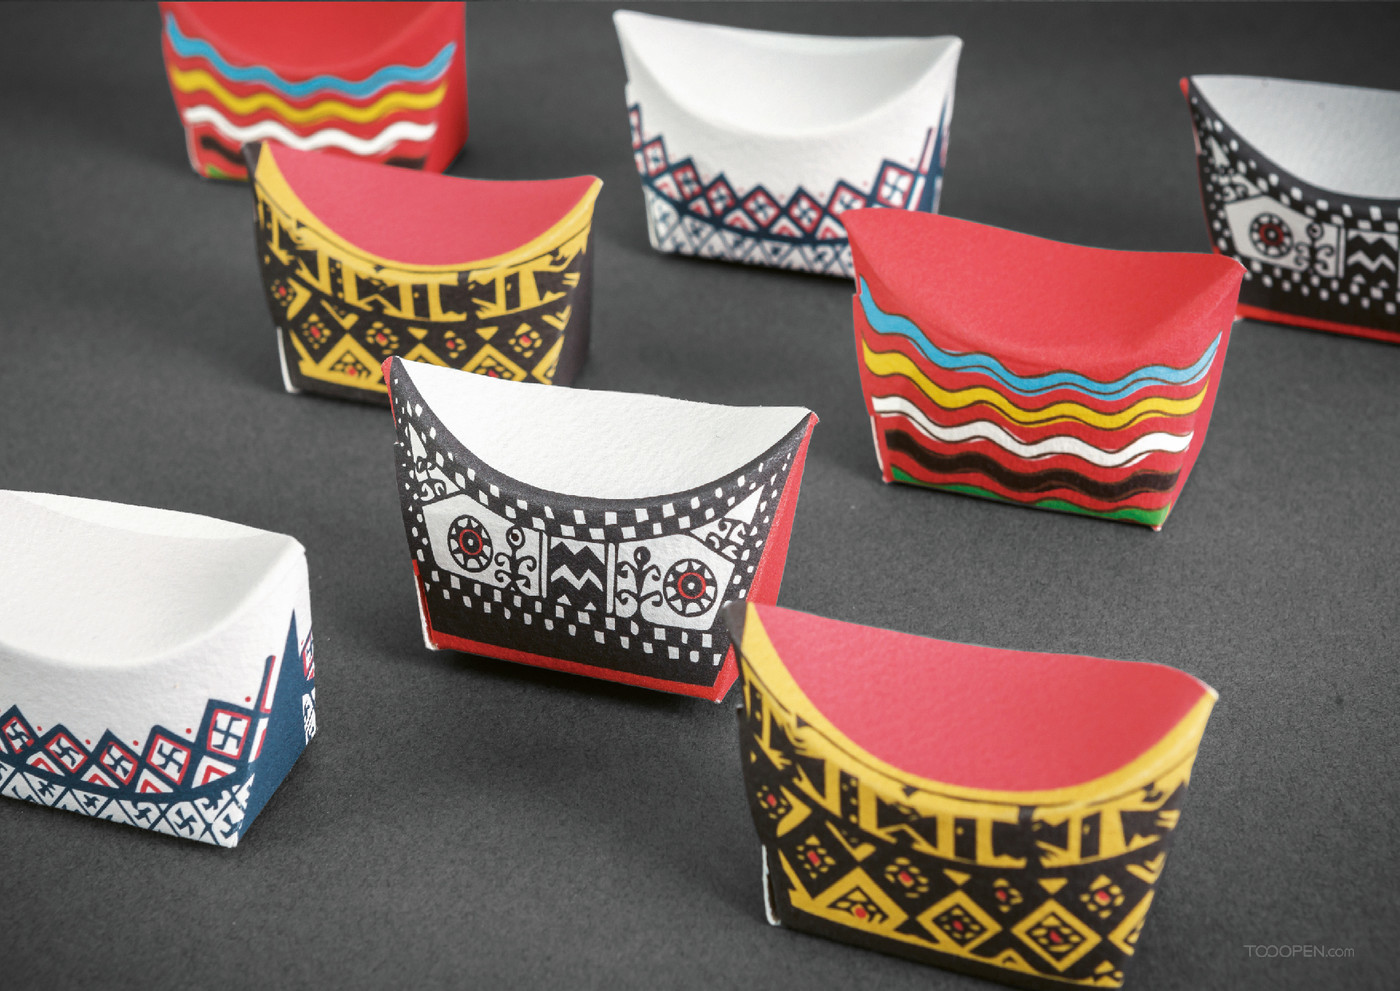 彩虹岛国创少数民族手绘文创大米特产礼品包装设计欣赏-05